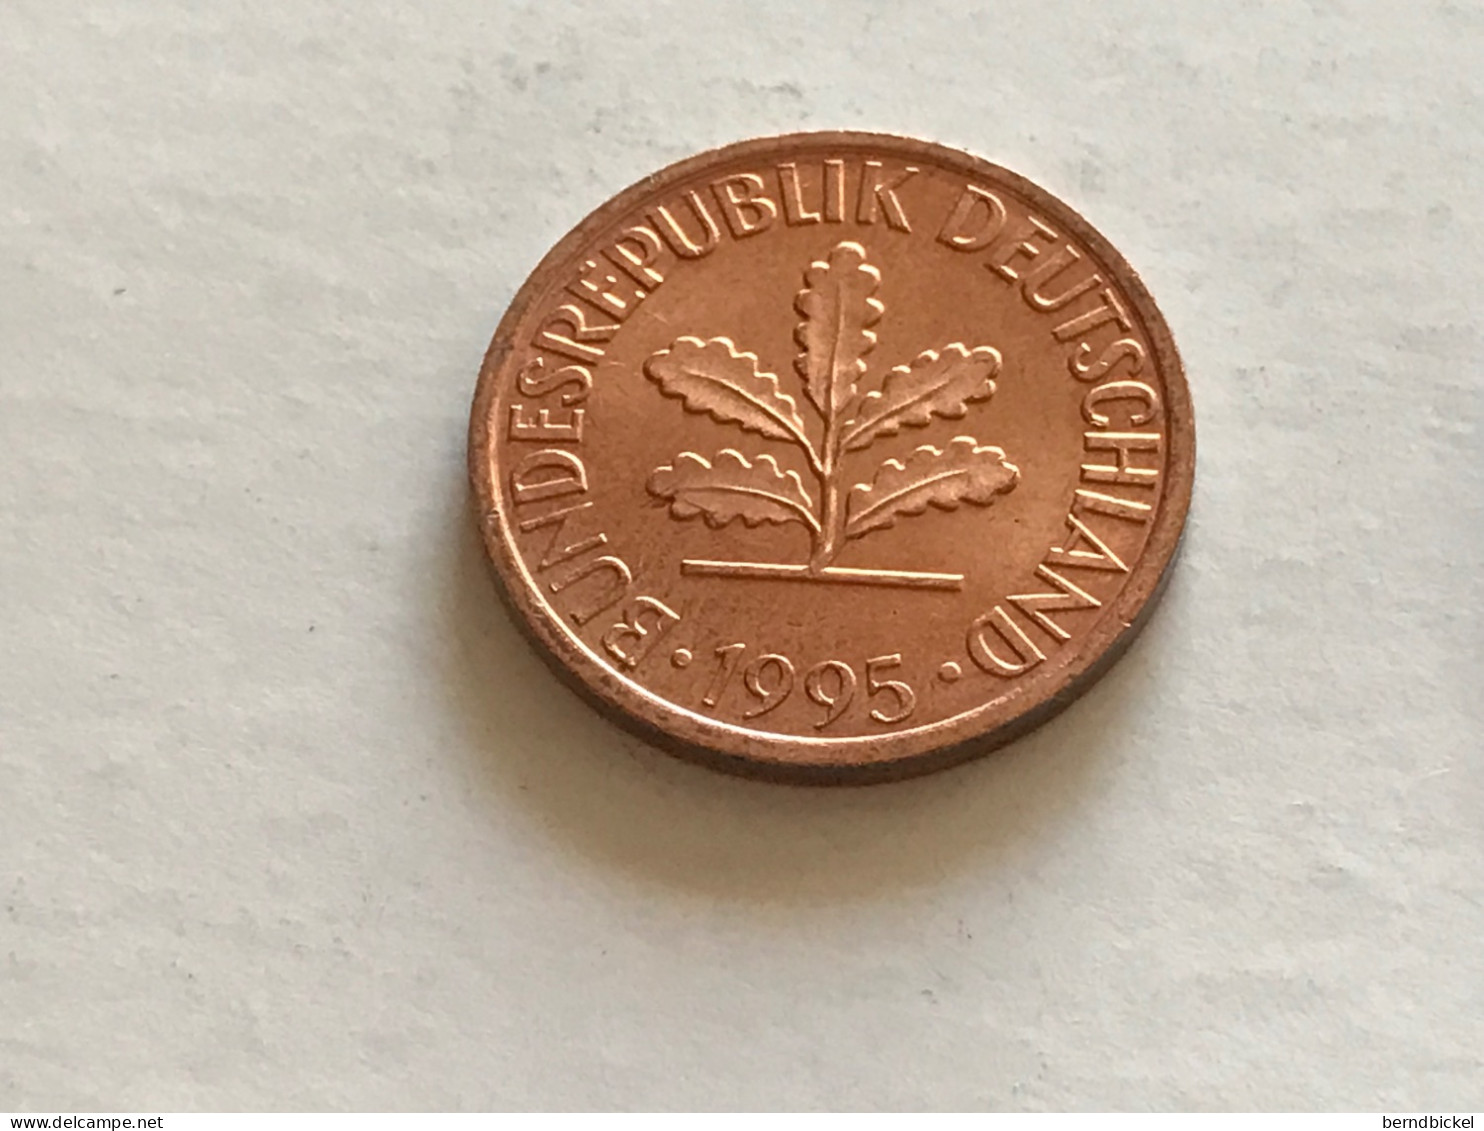 Münze Münzen Umlaufmünze Deutschland 2 Pfennig 1995 Münzzeichen G - 2 Pfennig